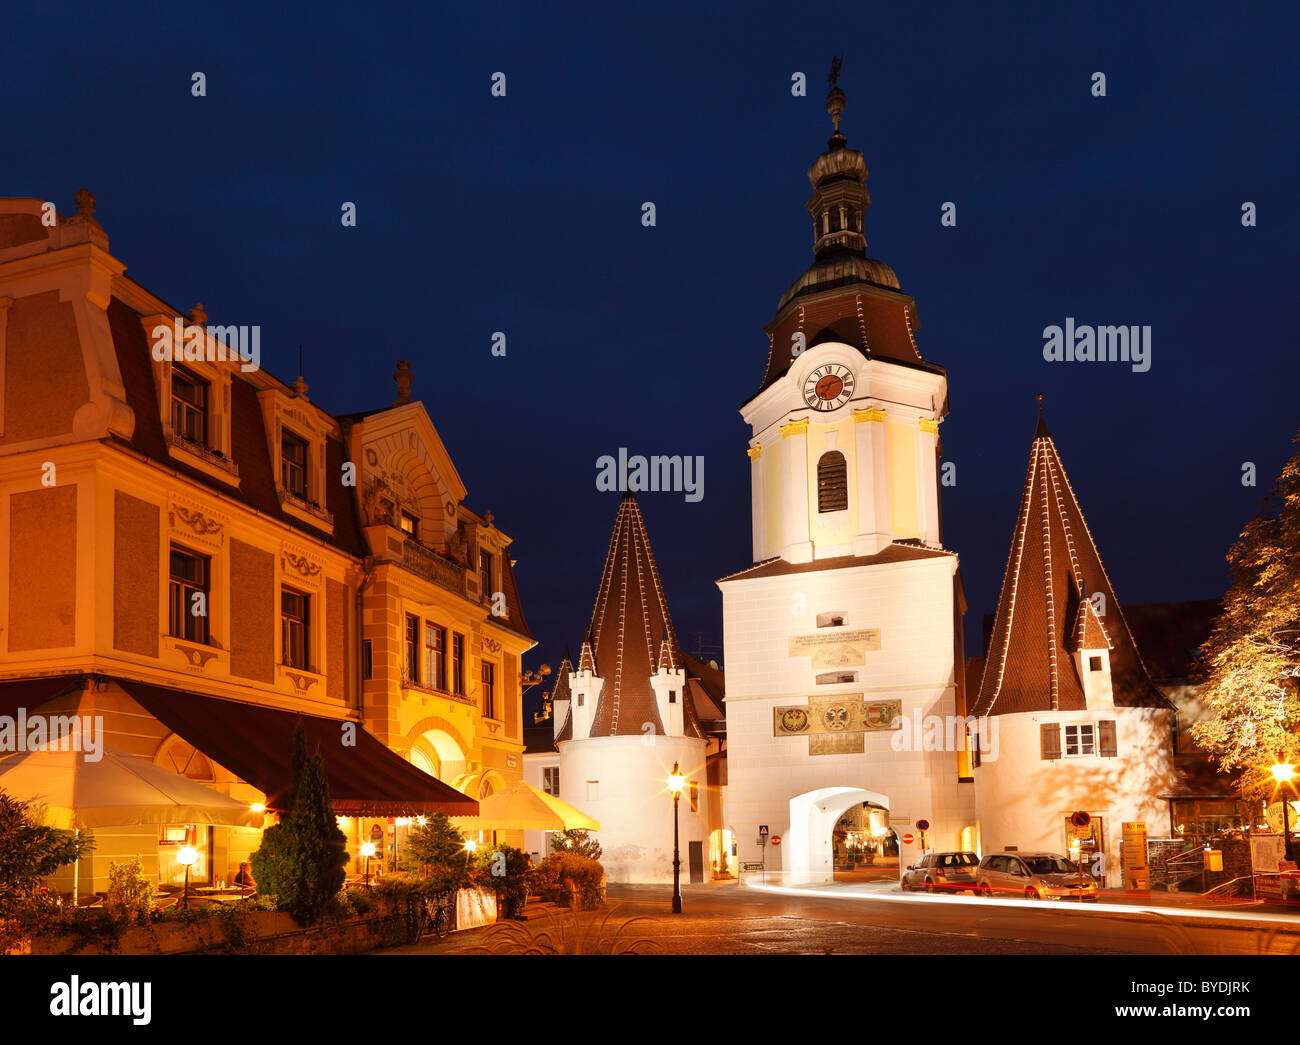 Steiner Tore gate tower, old town, Krems, Wachau, Waldviertel region, Lower Austria, Austria, Europe Stock Photo